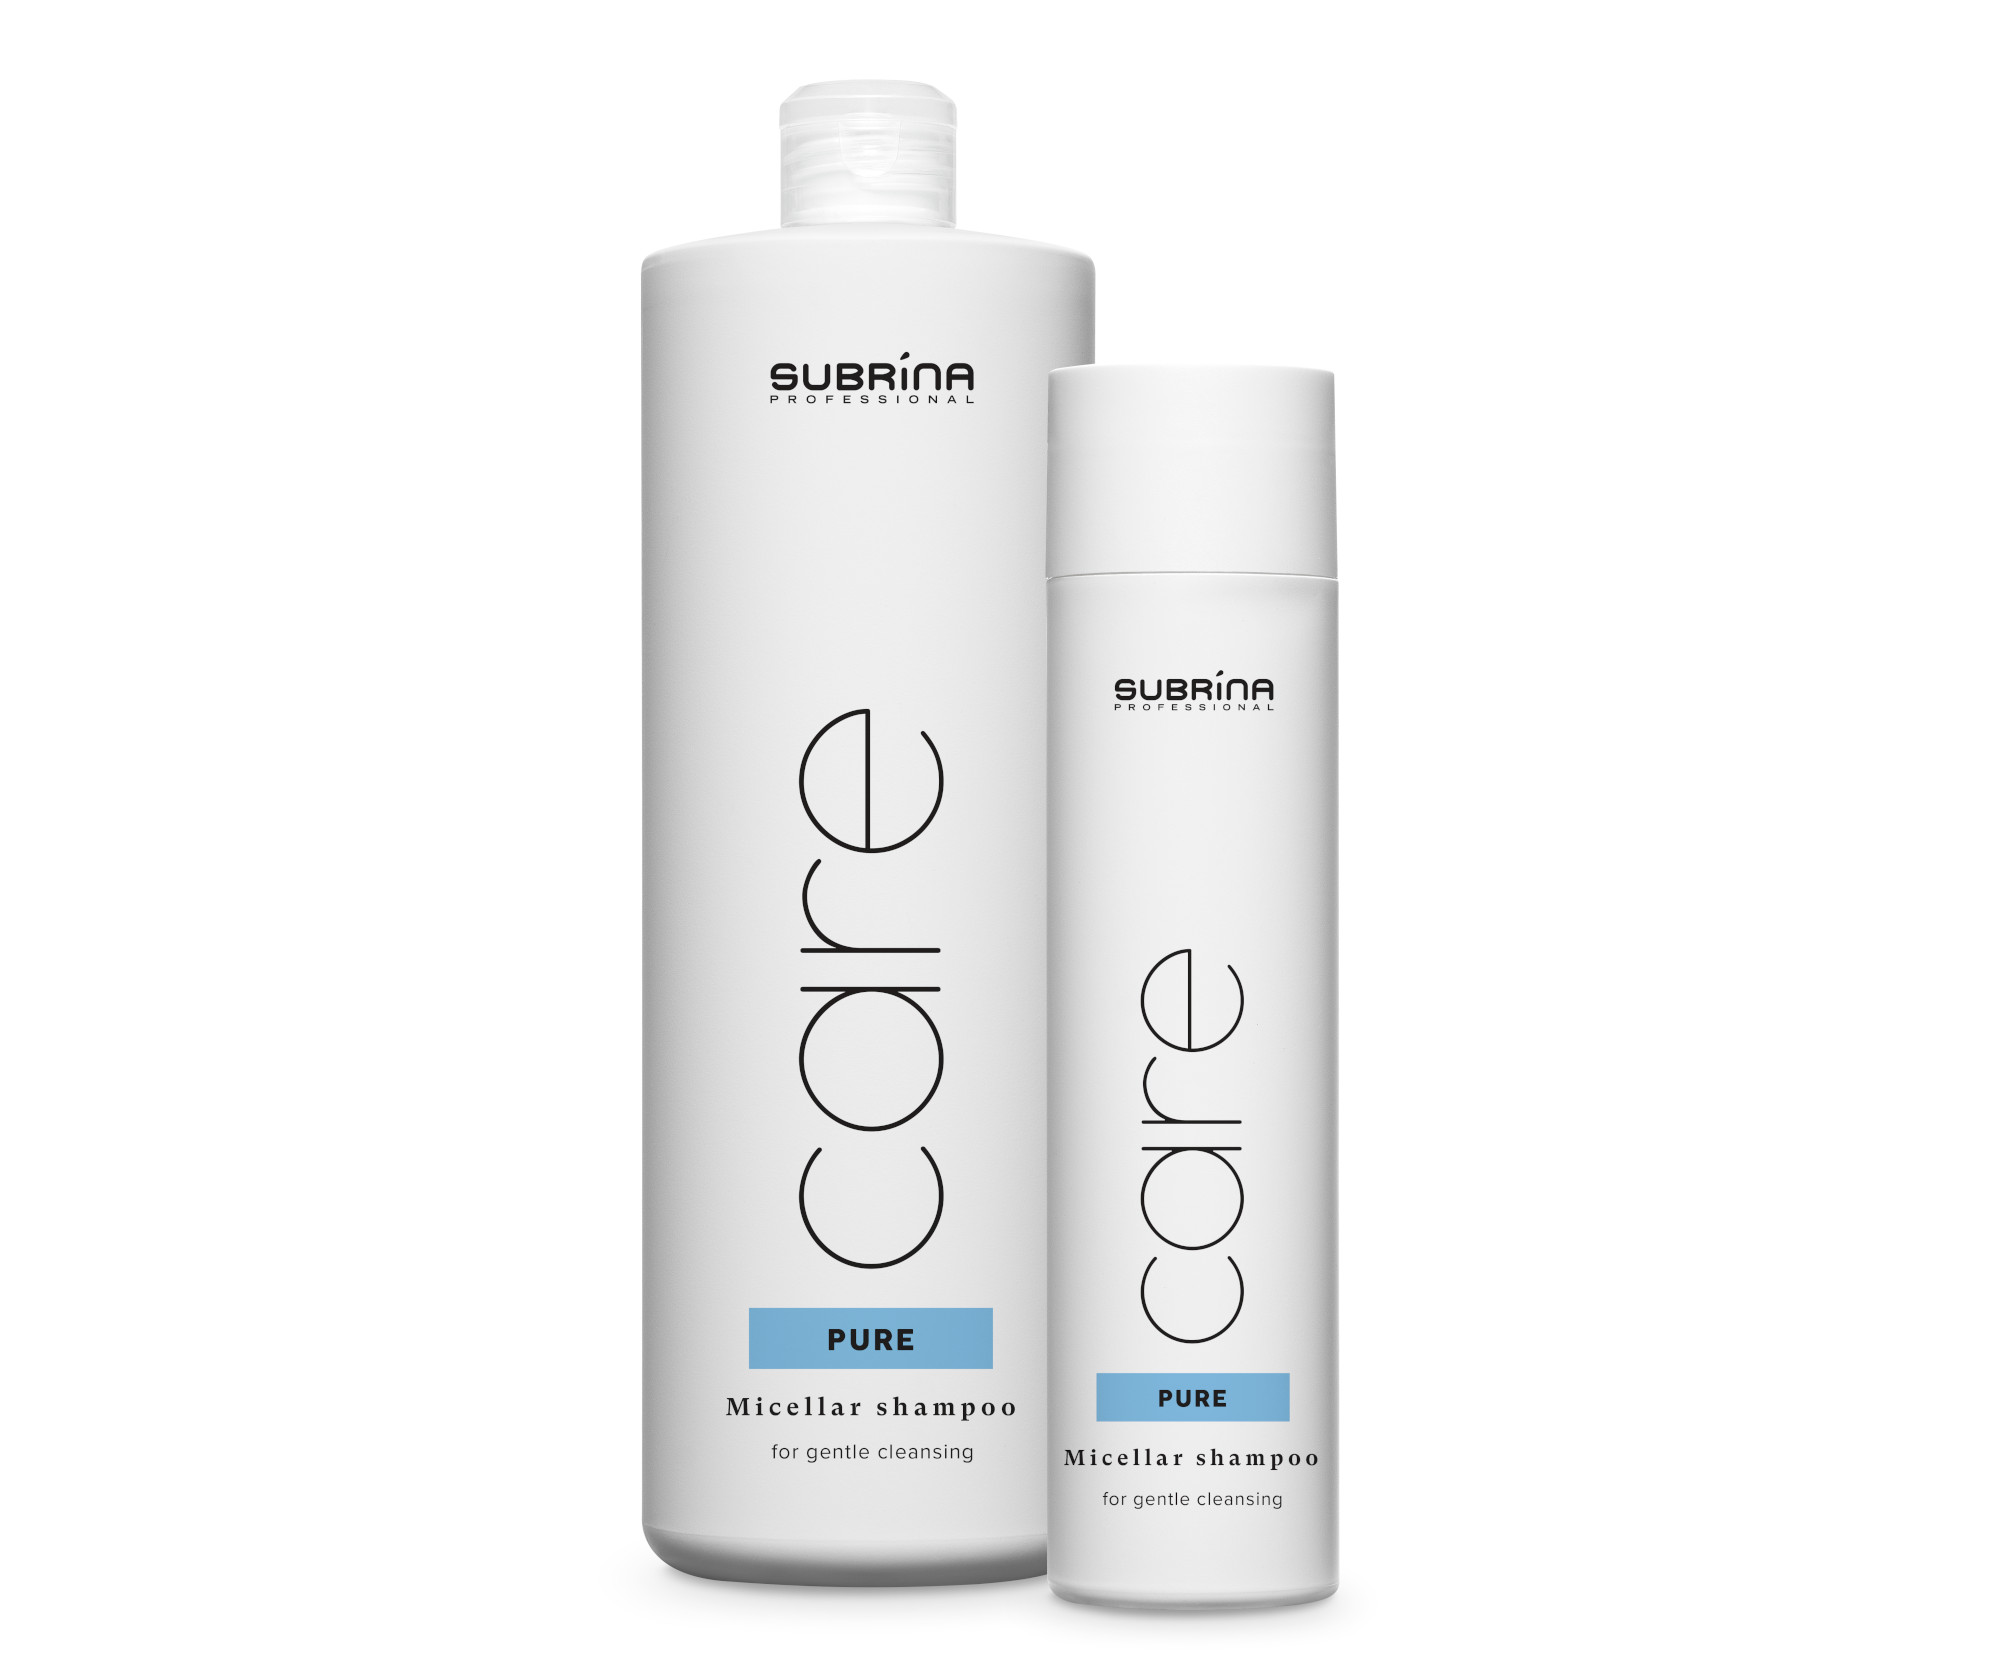 Objemový micelární šampon Subrina Professional Care Pure Micellar - 1000 ml + šampon 250 ml zdarma + dárek zdarma